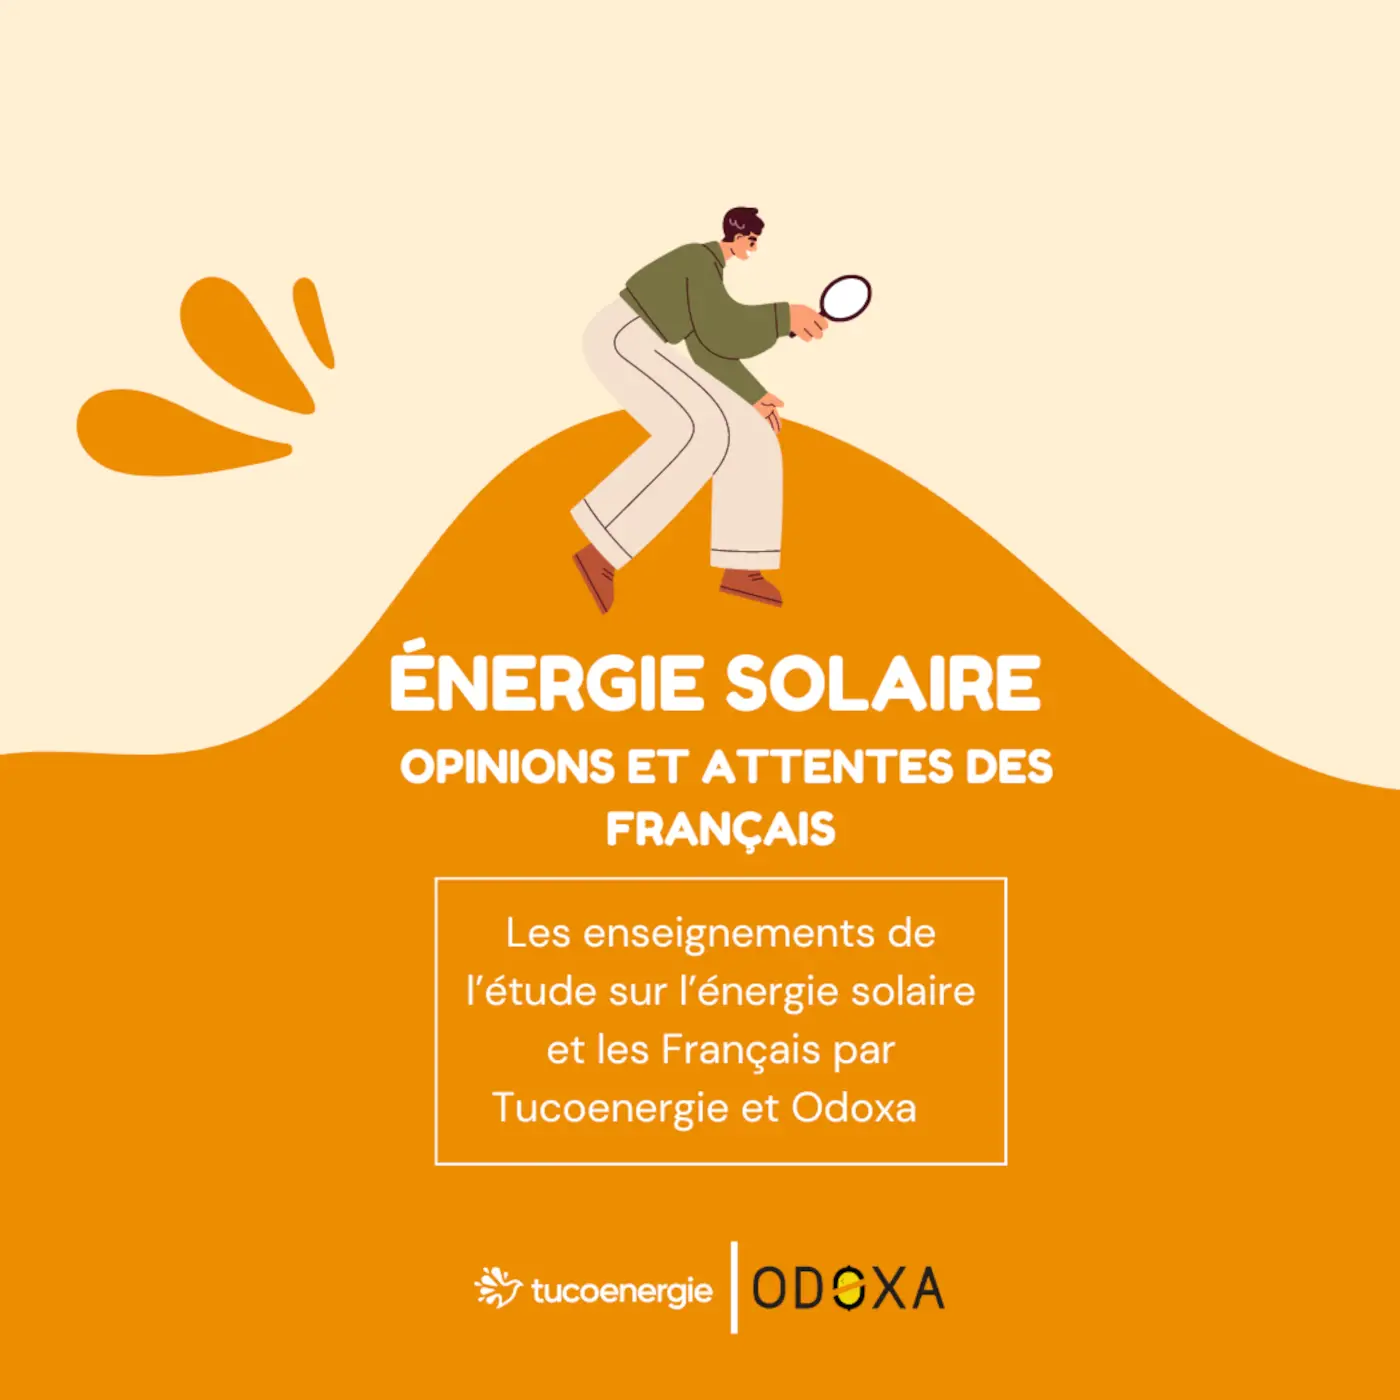 energie solaire : opinions et attentes des Français, les enseignements de l'étude sur l'énergie solaire et les Français par Tuco et Odoxa